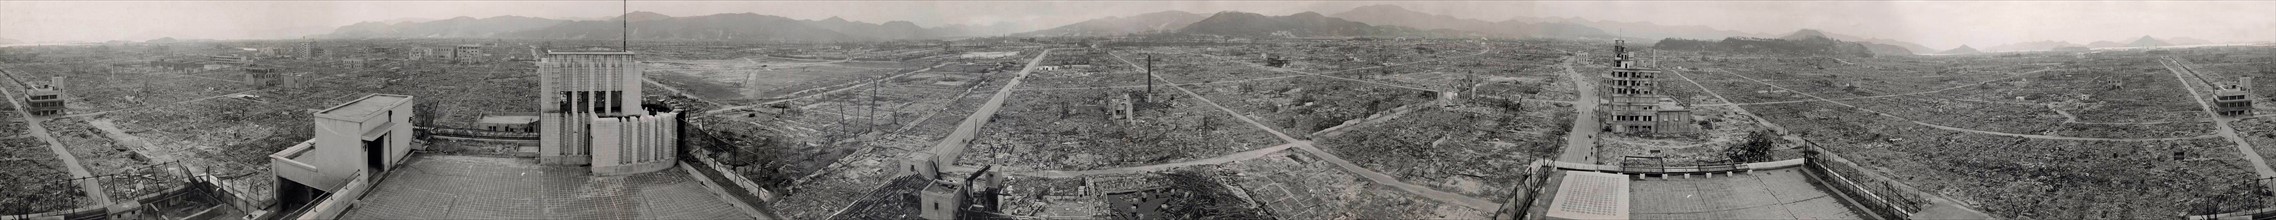 Hiroshima panoramic view